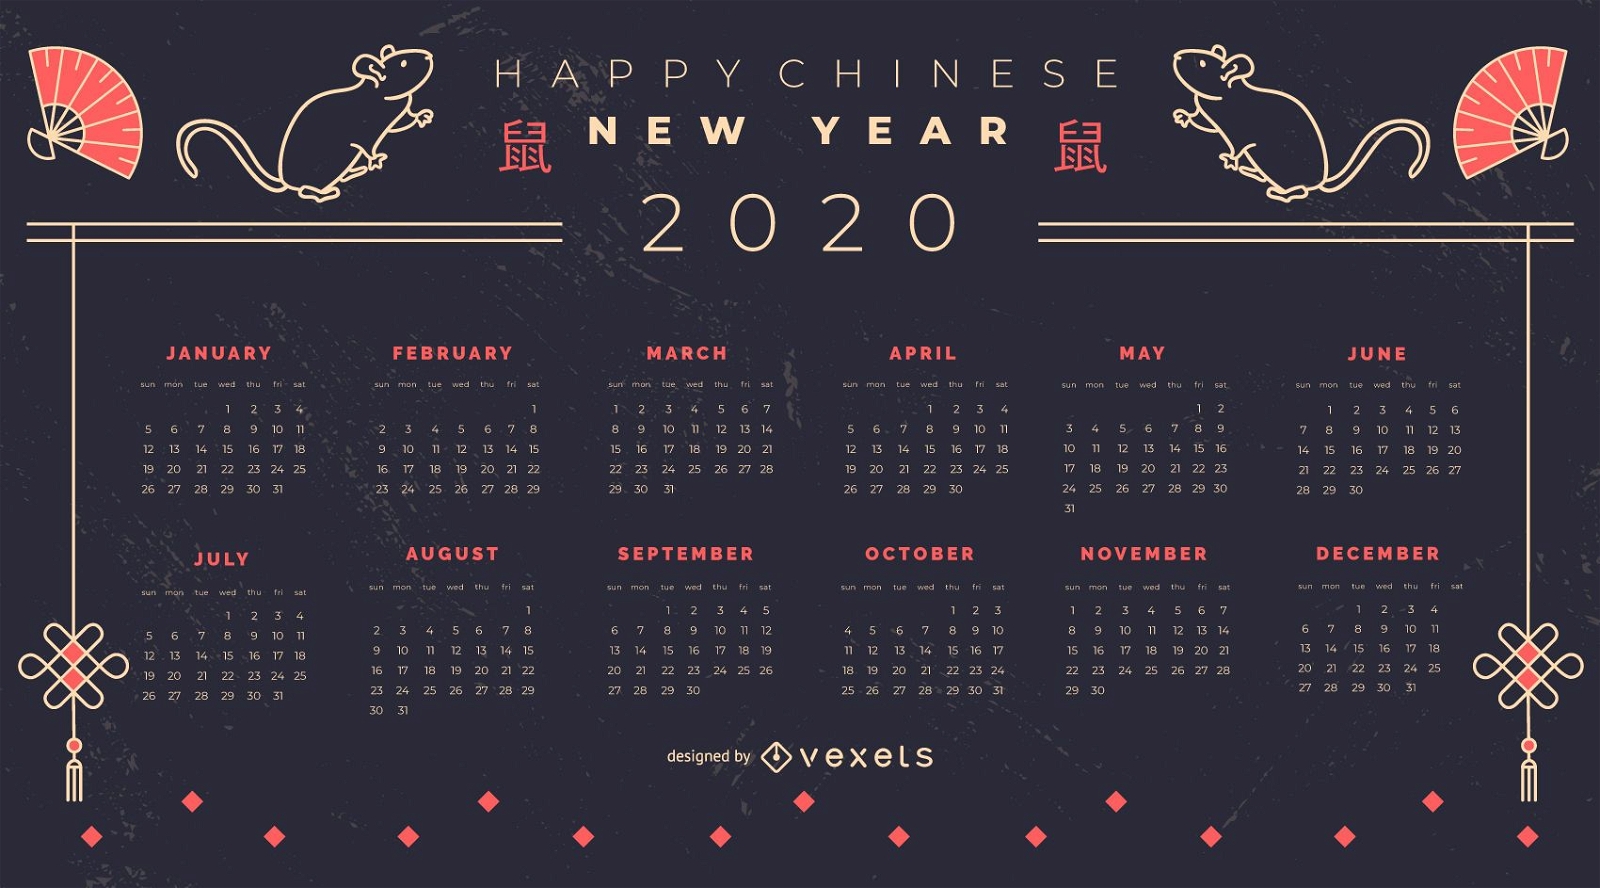 Chinesisches Neujahr 2020 Kalenderdesign